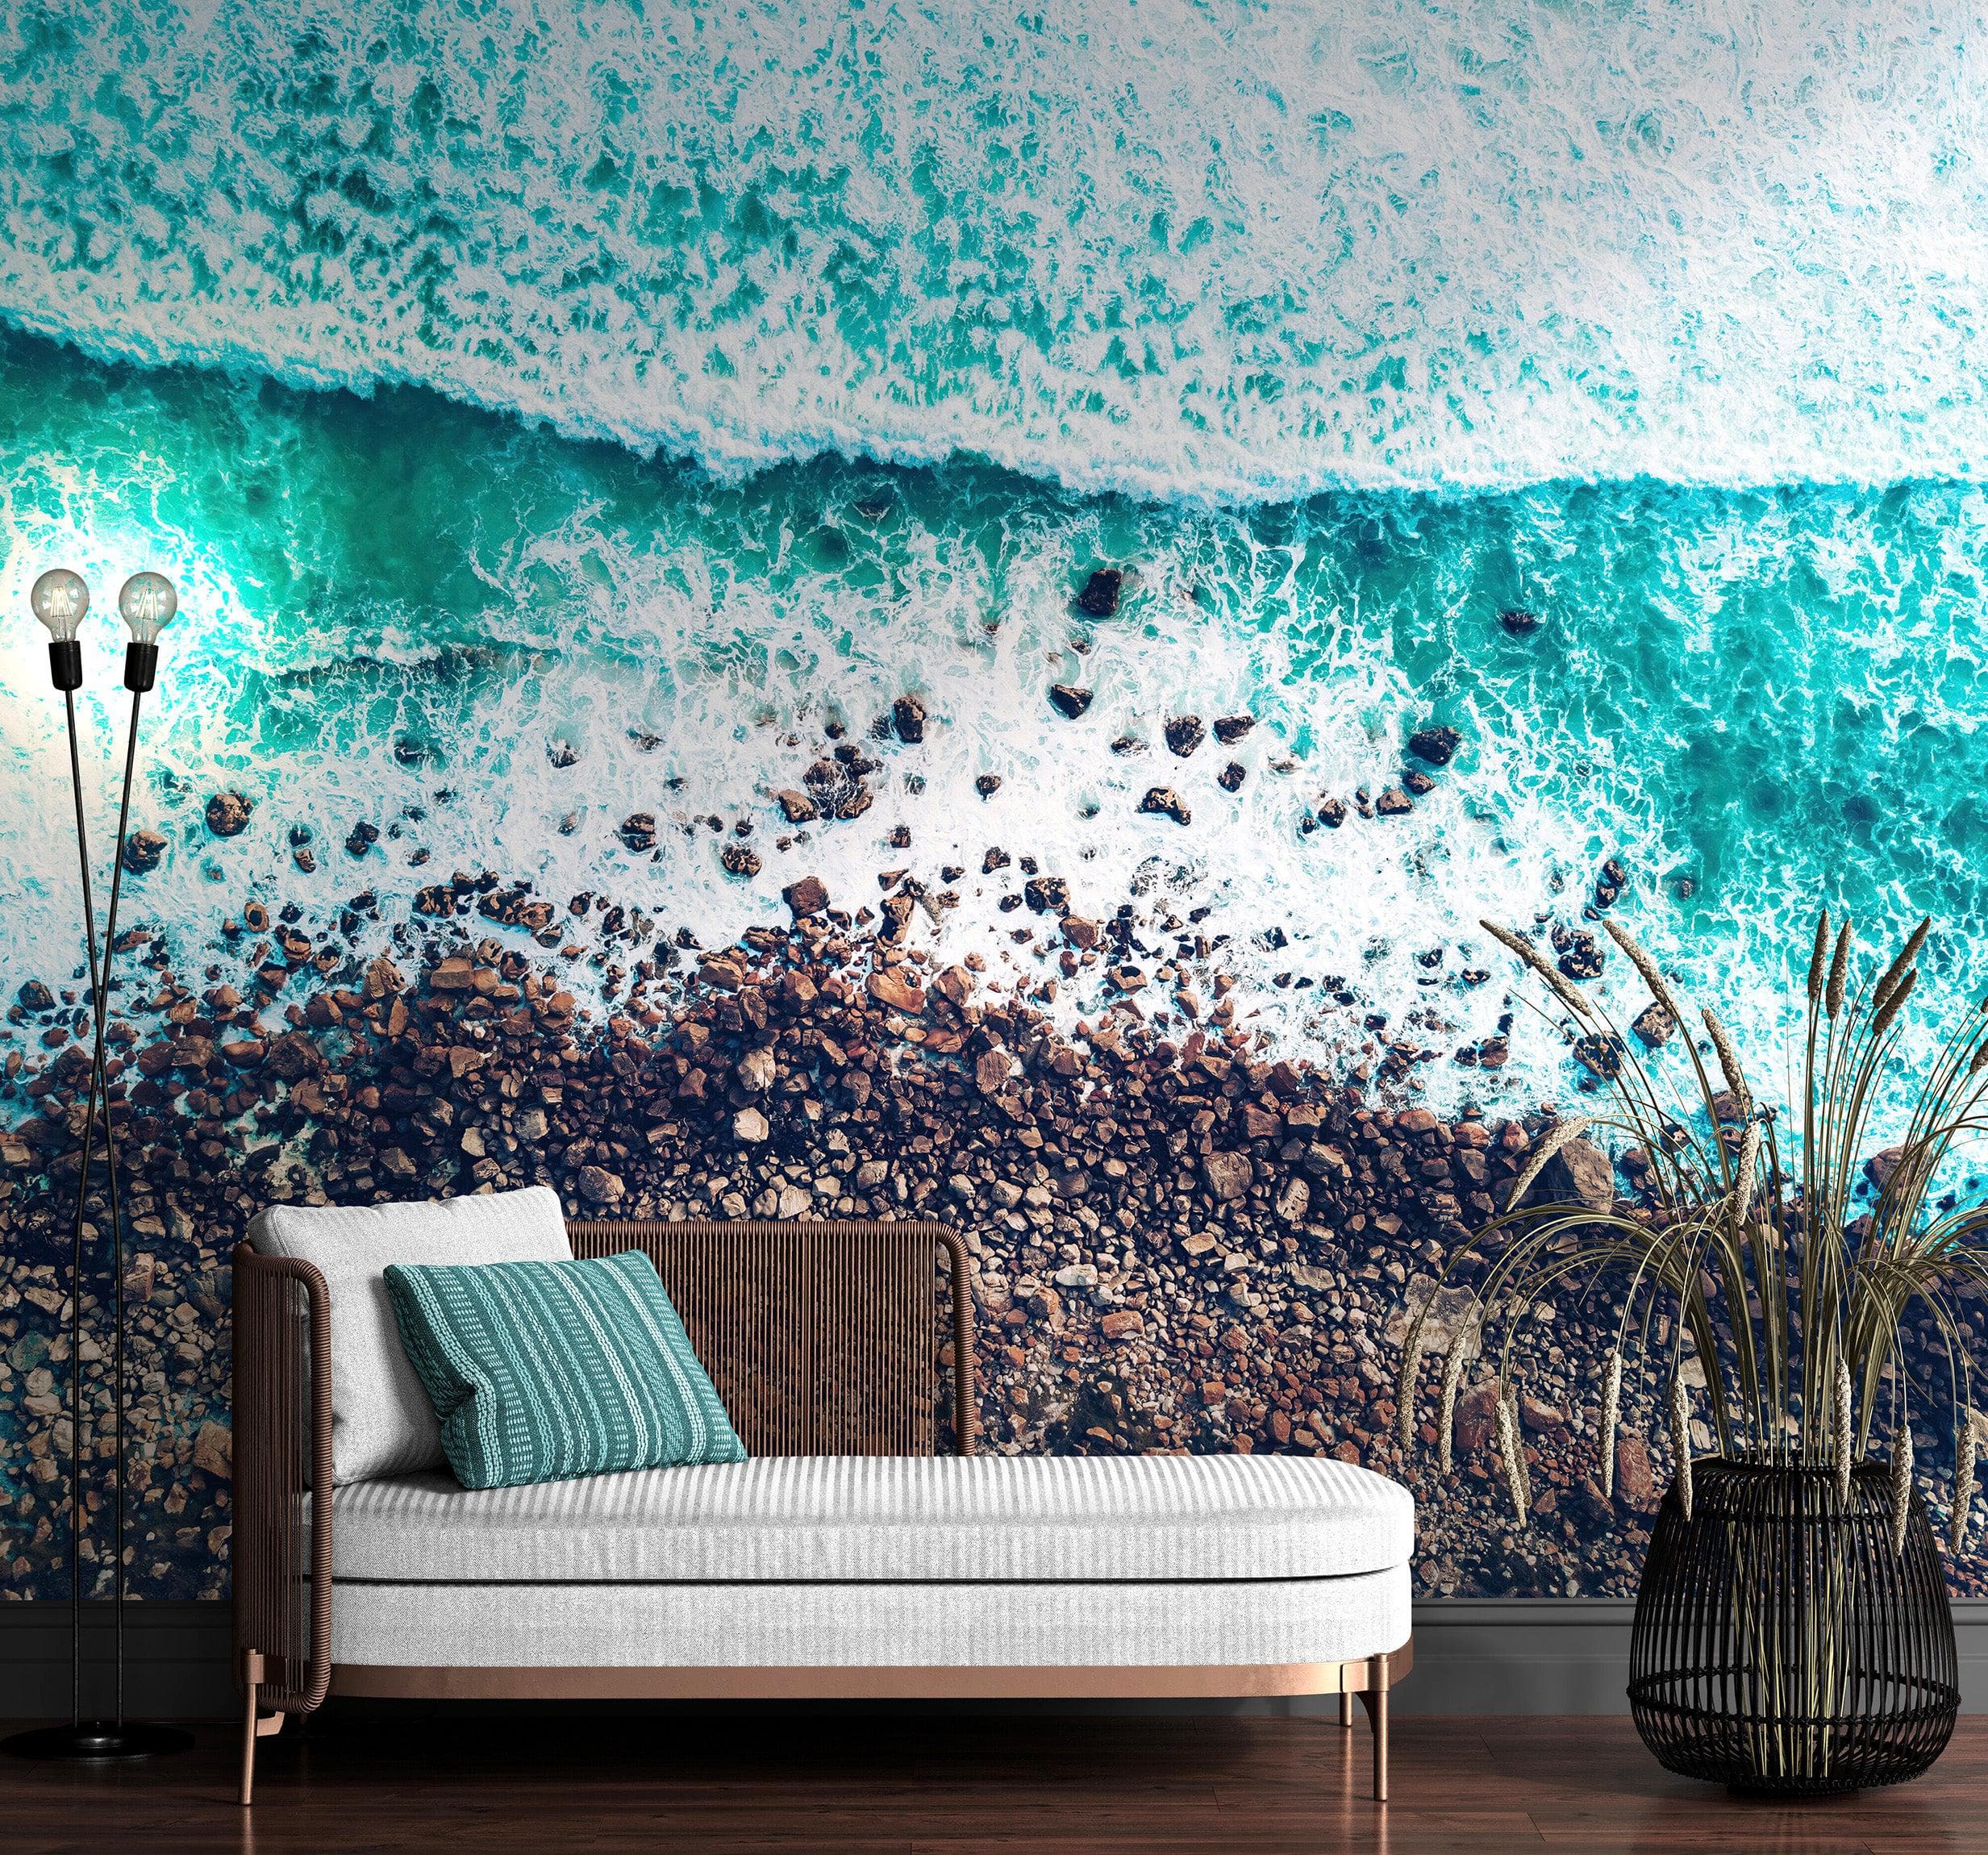 Moss Rocks in Sea Mural Wallpaper in Blue-Green Tropical Wall